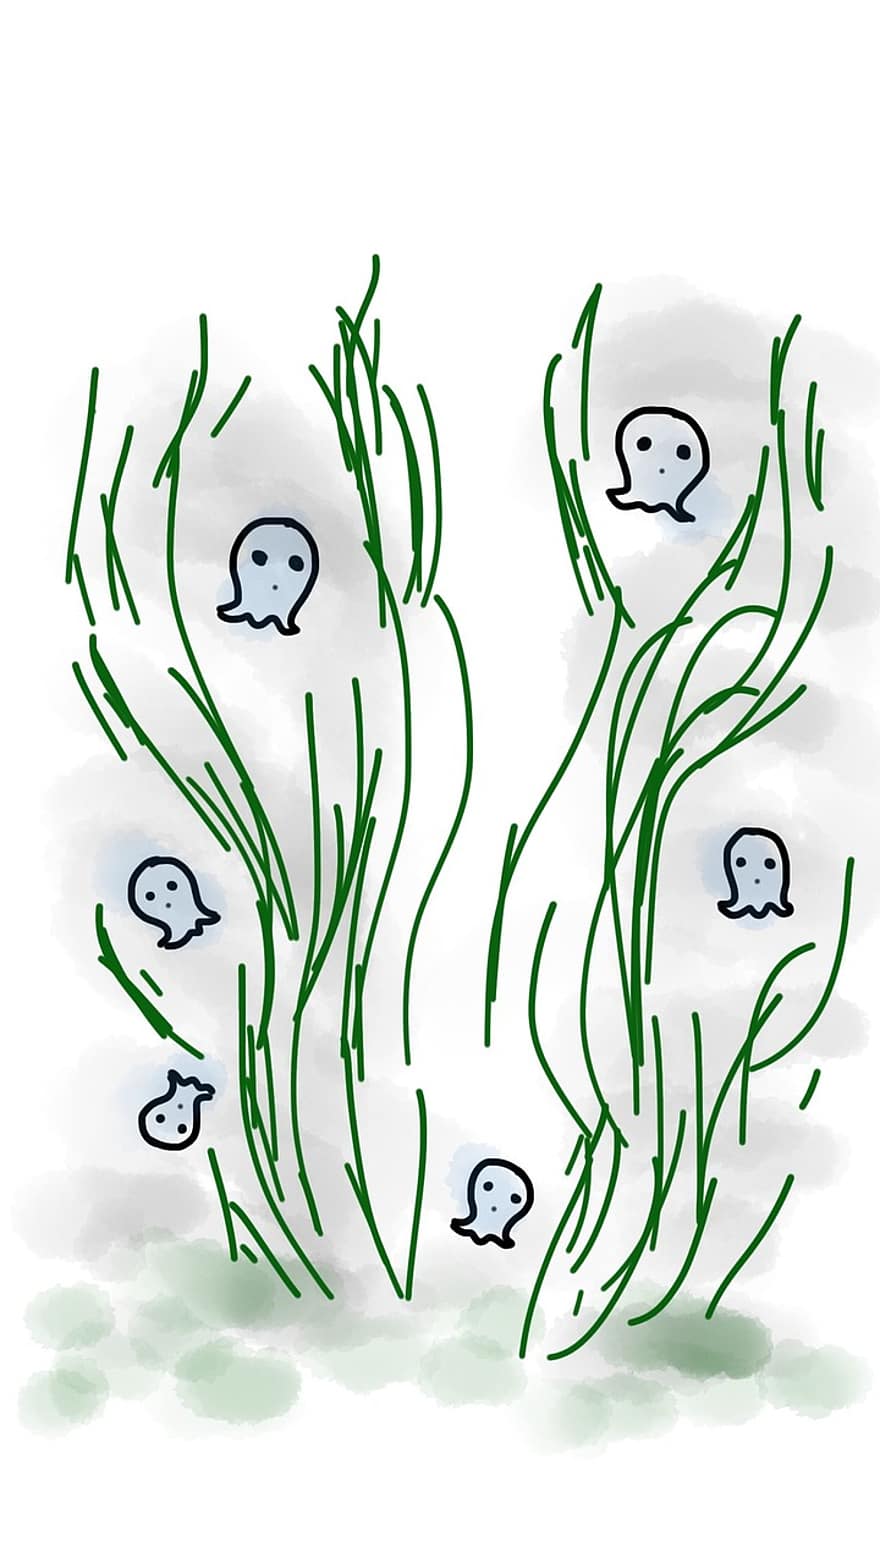 fantasma, grama, dia das Bruxas, mistério, flutuando, Trevas, medo, verde, Pequeno fantasma, assustador, esboço